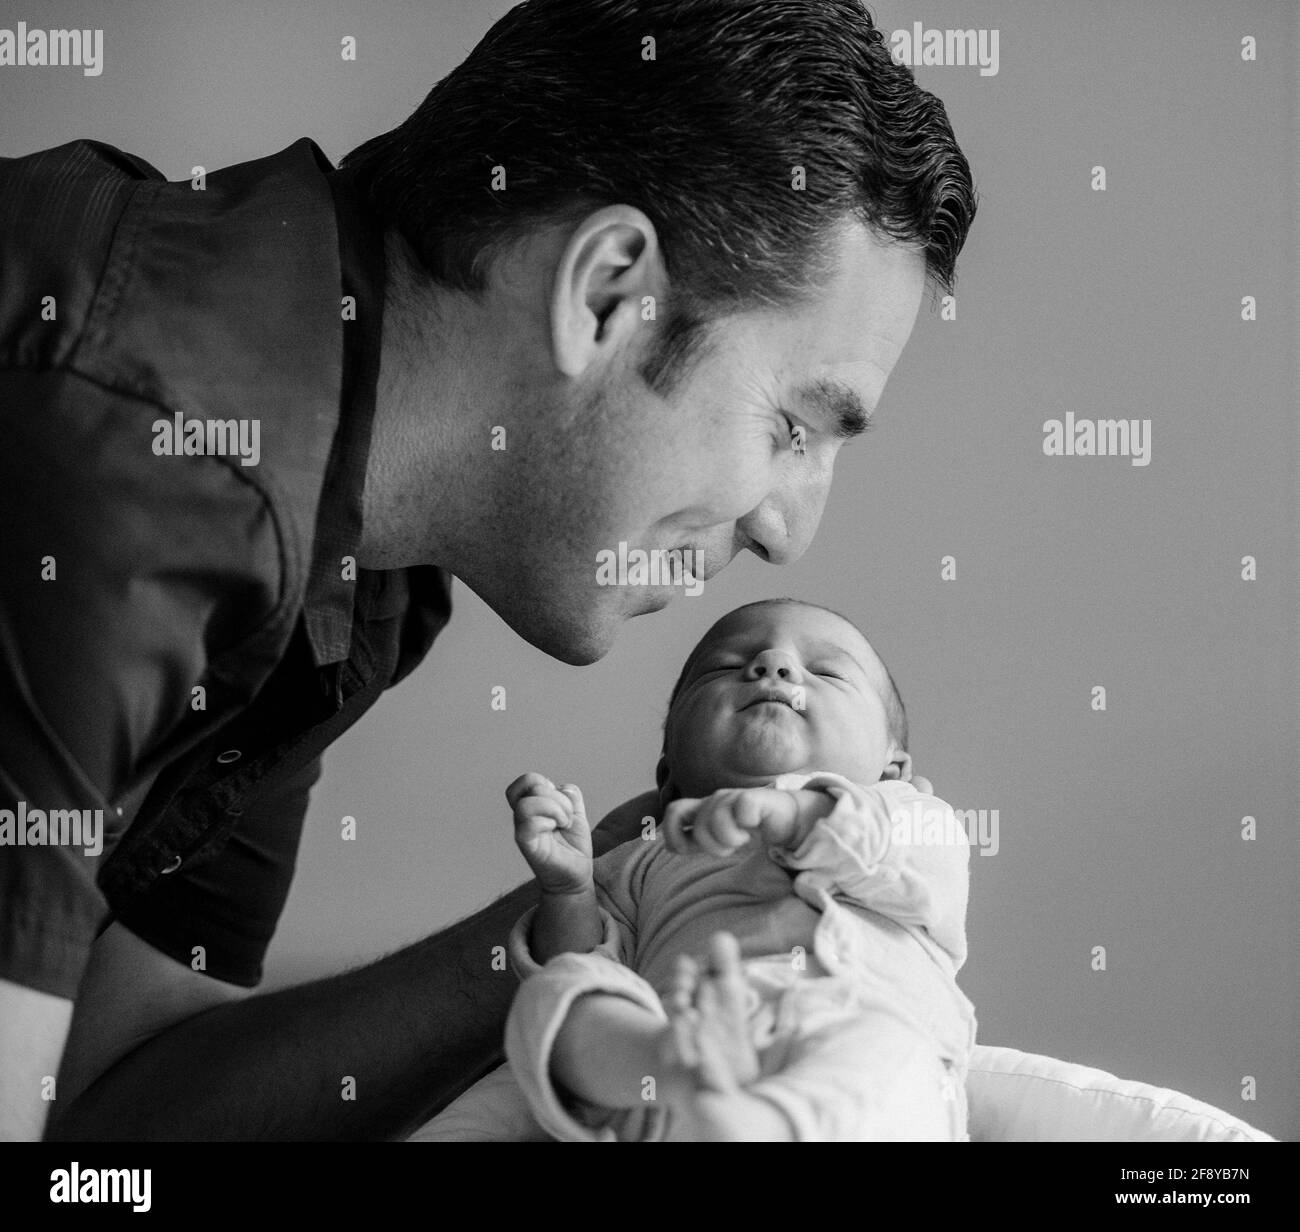 Portrait du père avec bébé nouveau-né Banque D'Images